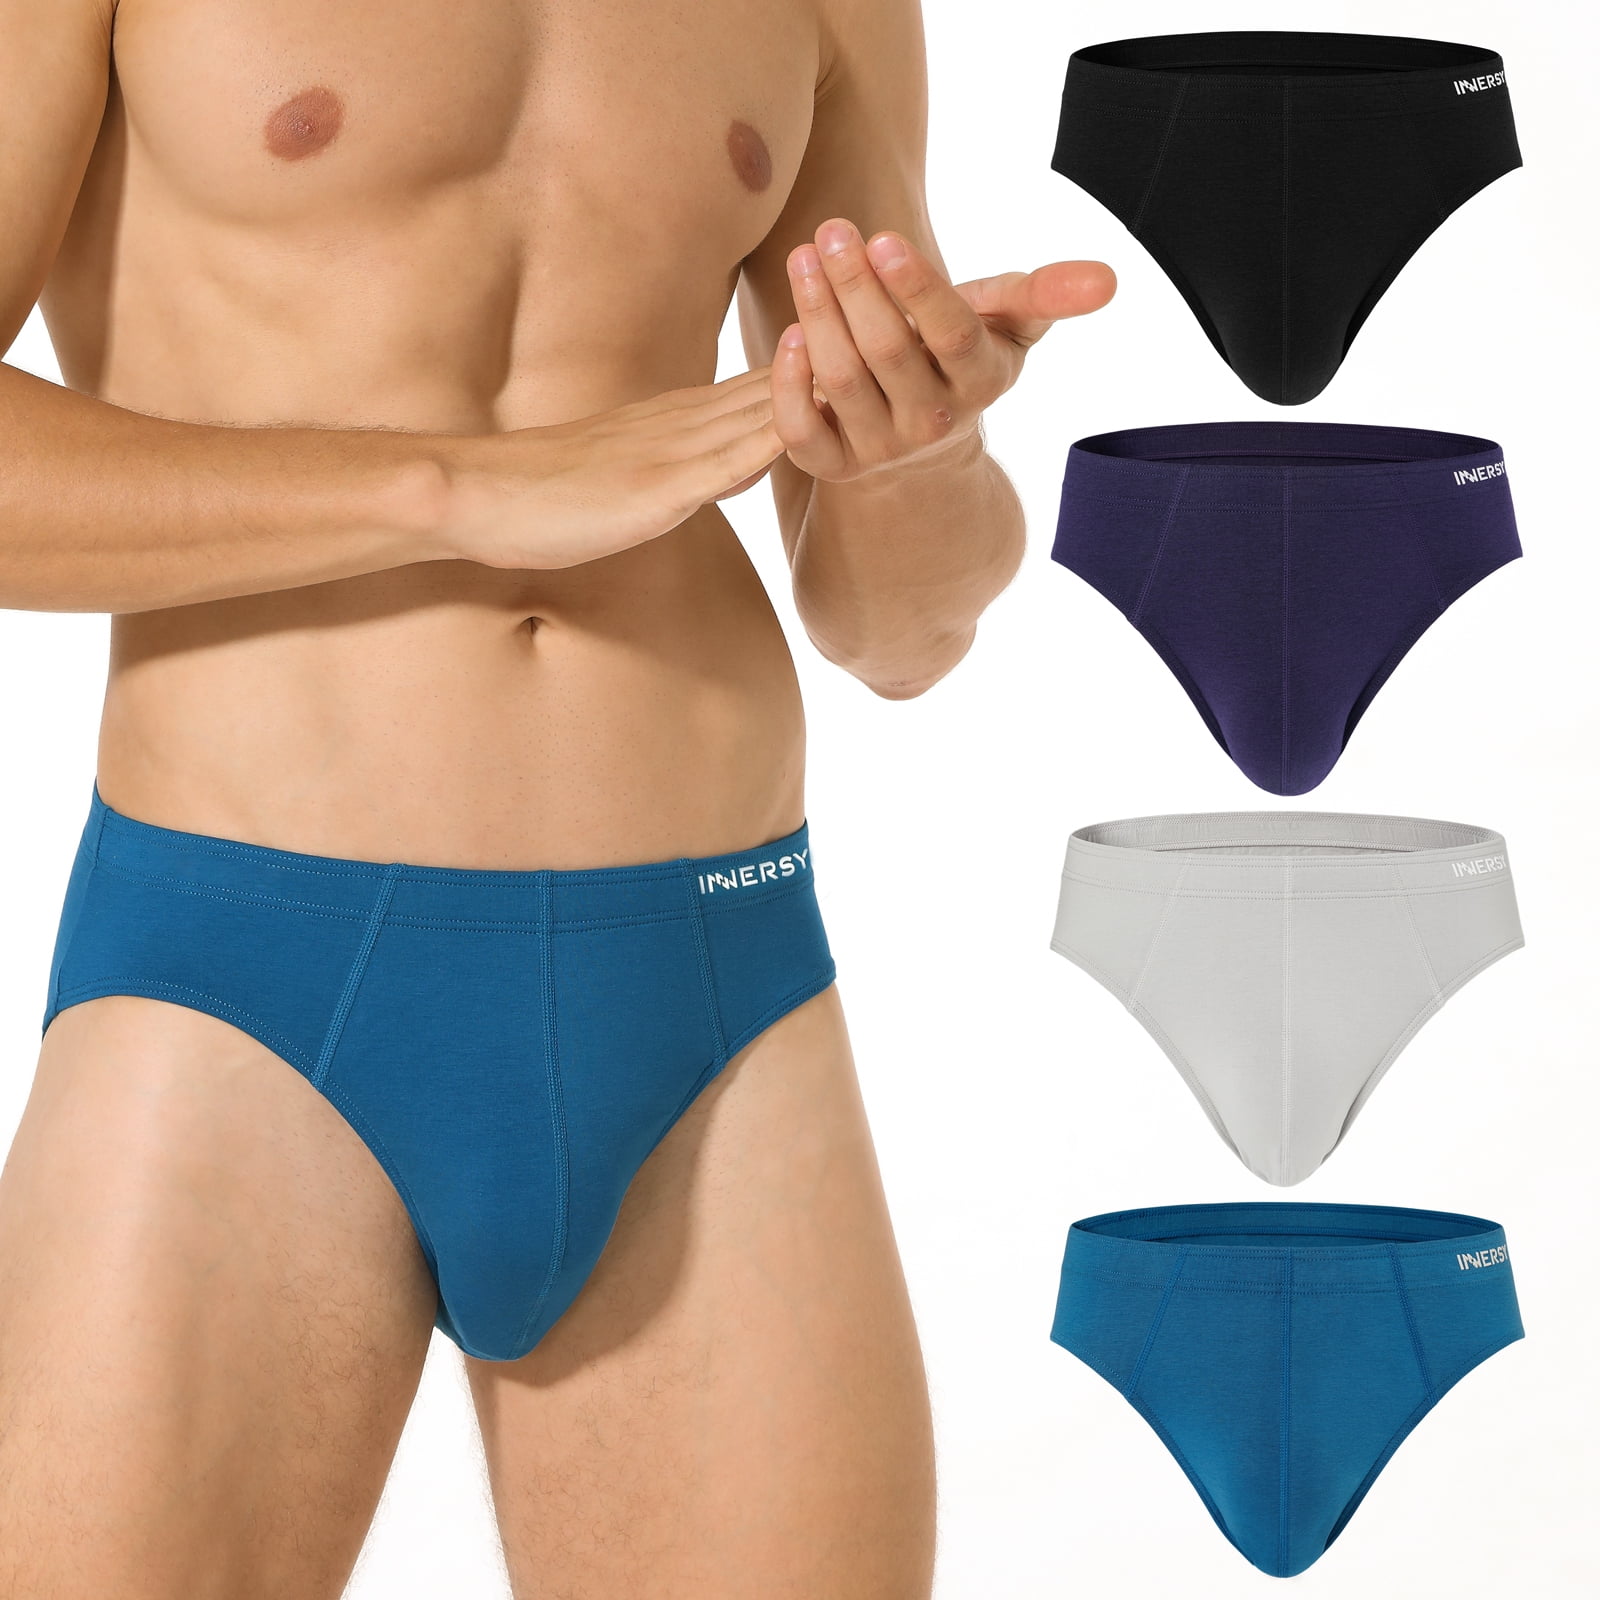 INNERSY Men's Underwear Briefs Soft Comfy Underwear Pack of 4 (L